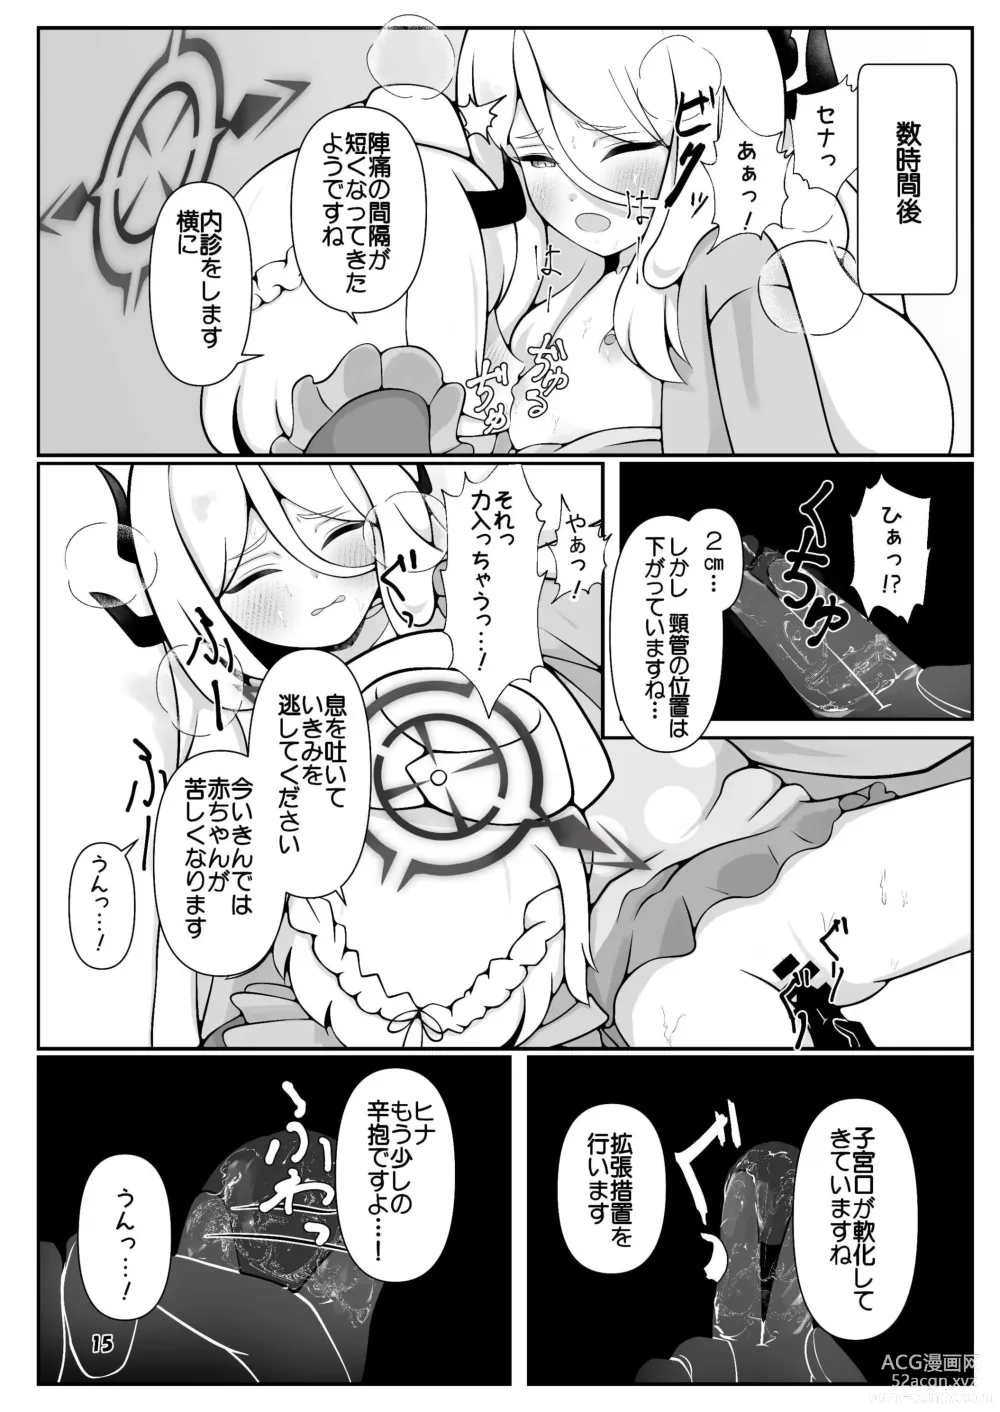 Page 15 of doujinshi Hina-chan ga ganbatte akachan oumu hon